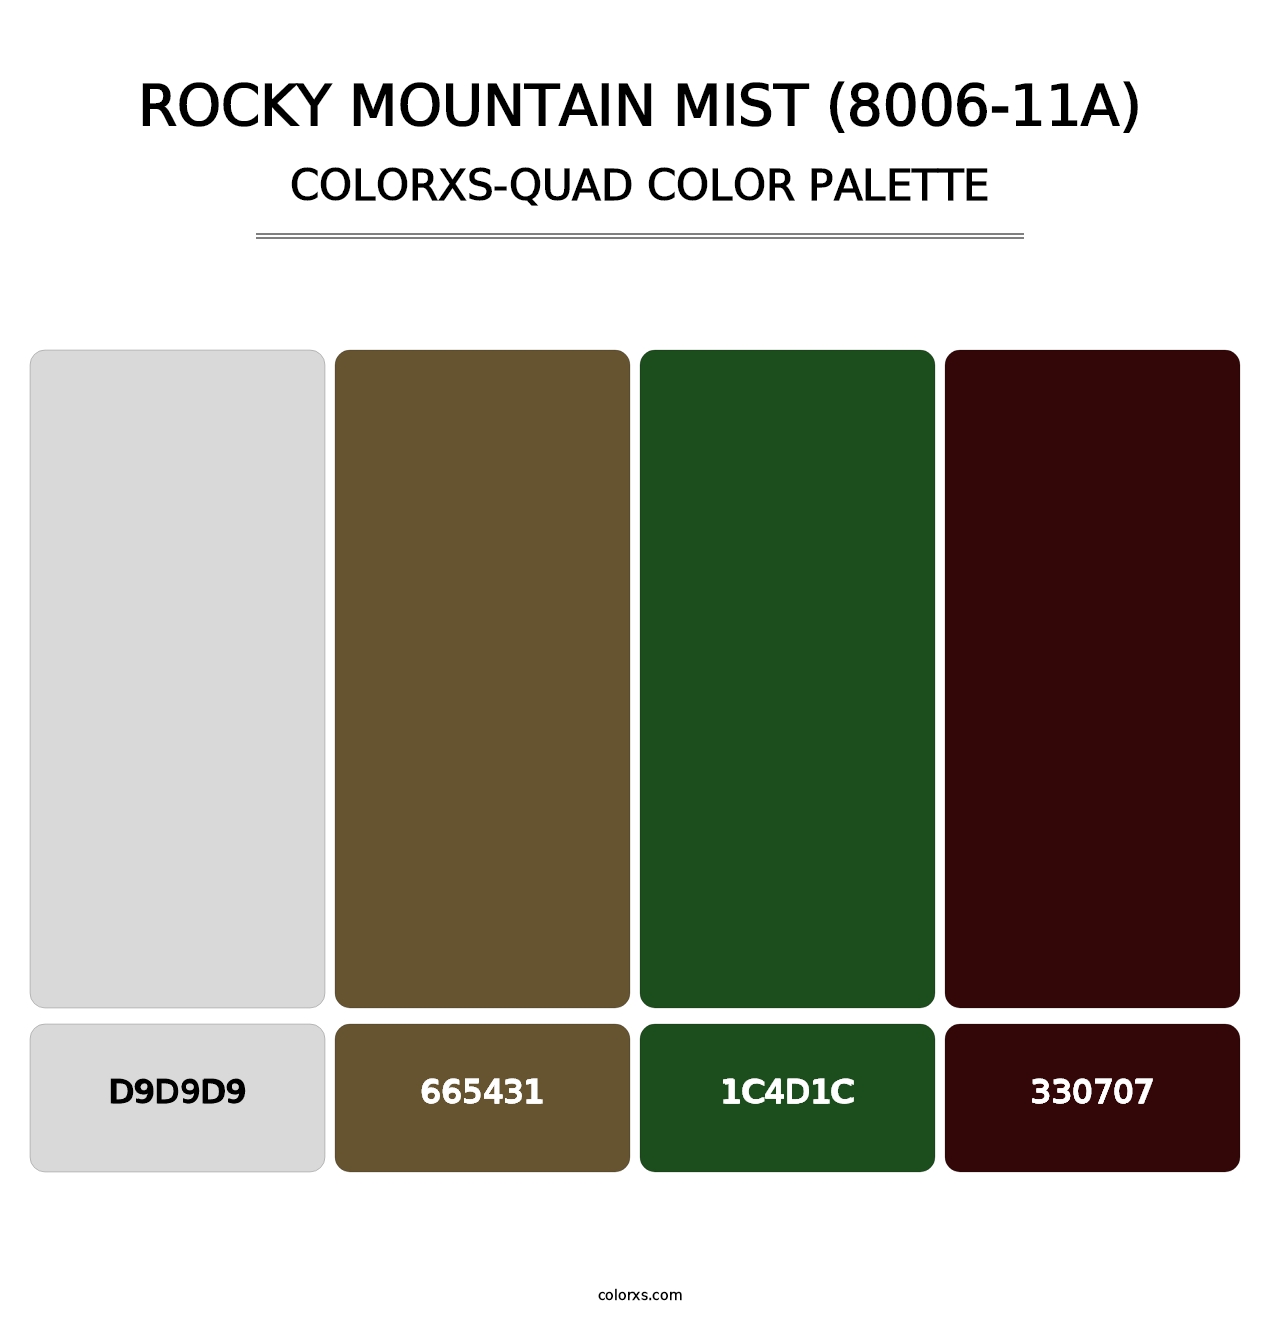 Rocky Mountain Mist (8006-11A) - Colorxs Quad Palette